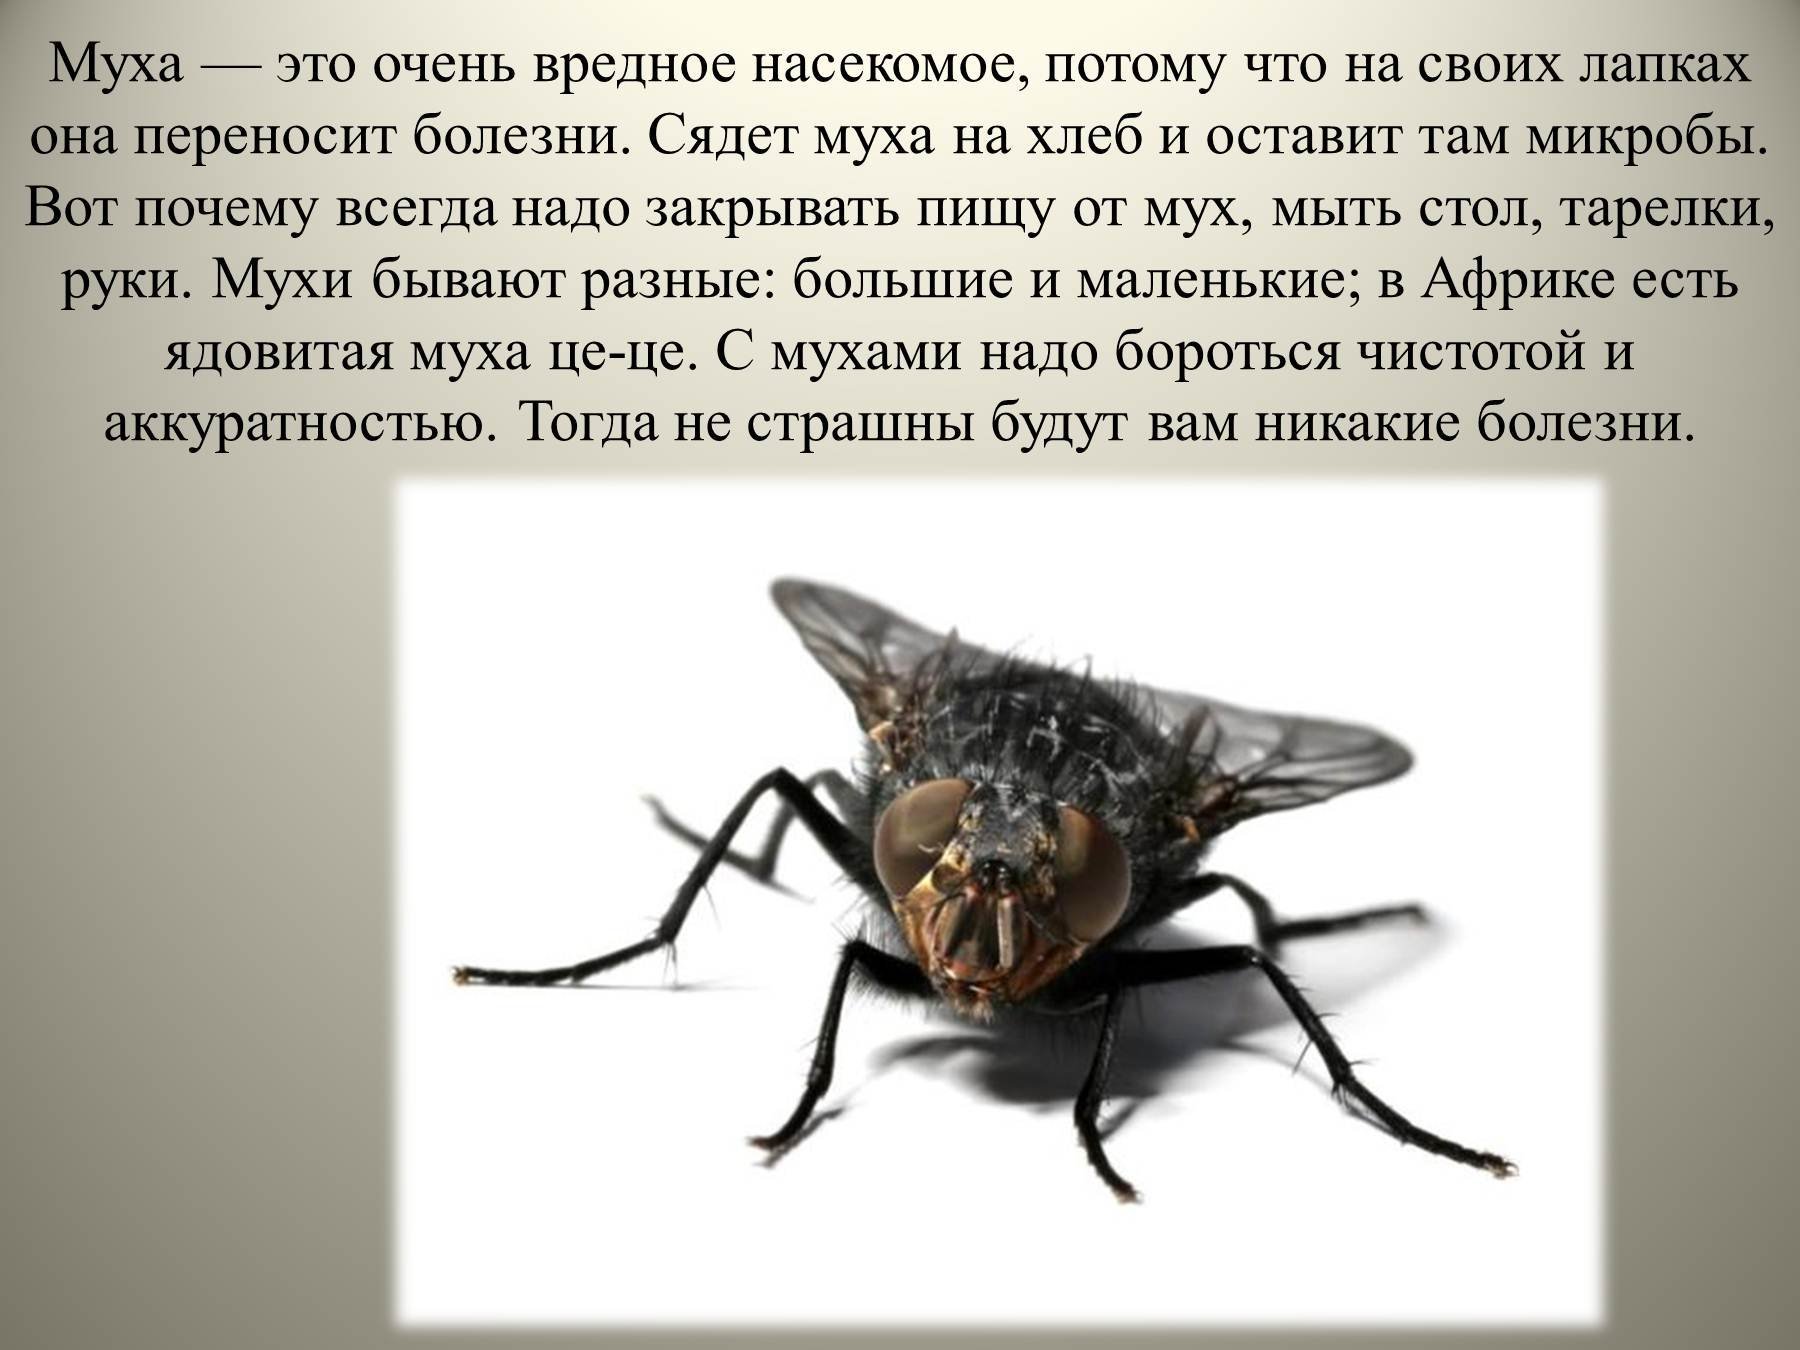 Фразы мухи. Доклад про мух. Вредные насекомые. Сообщение про муху. Интересные факты о мухах.